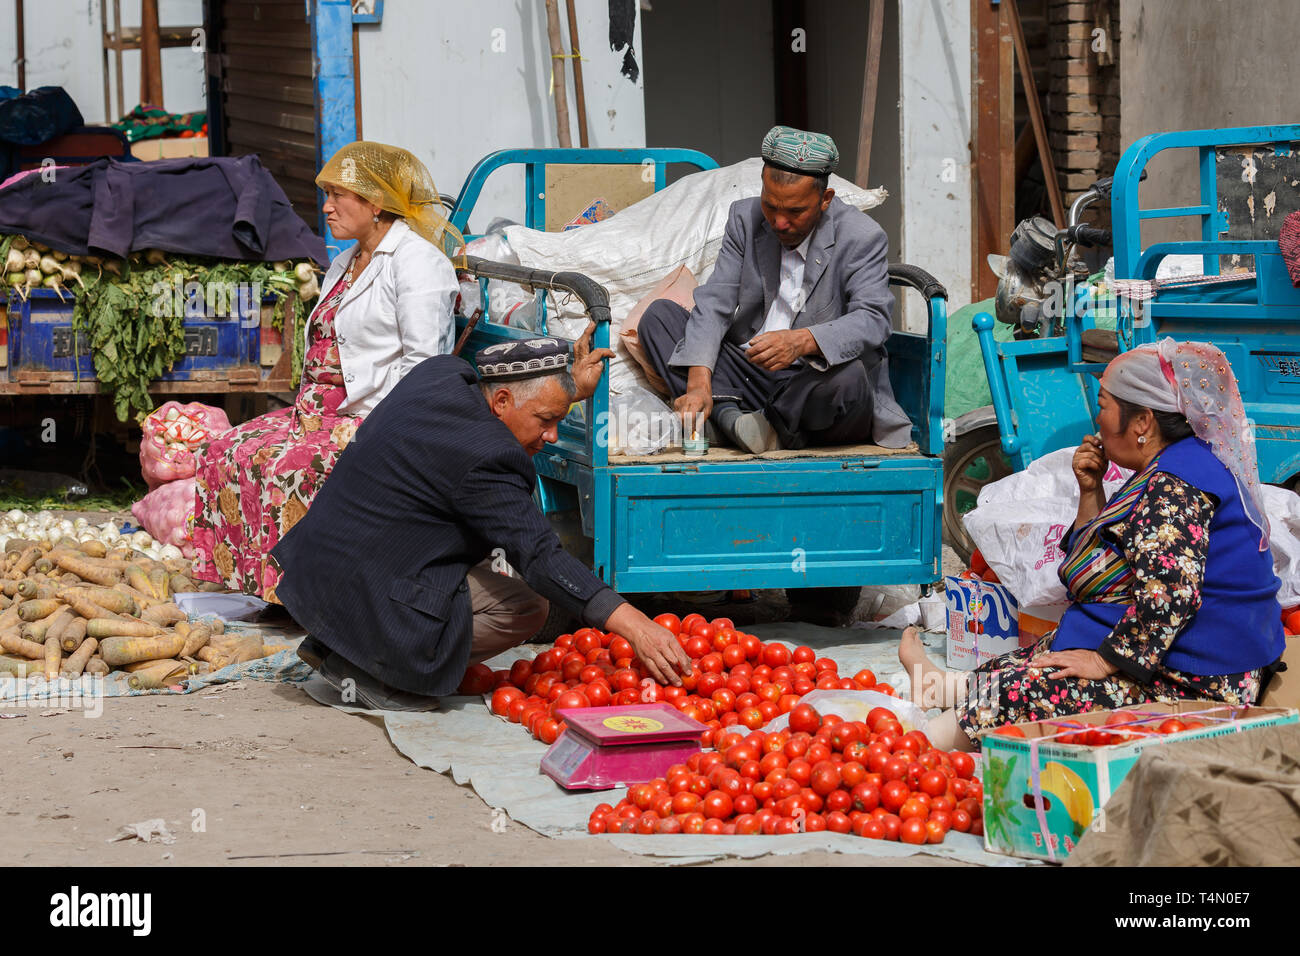 KASHGAR, XINJIANG / Cina - Ottobre 1, 2017: Scena con quattro anziani Uyghur gli uomini e le donne in attesa per i clienti presso un bazaar di Kashgar. Foto Stock